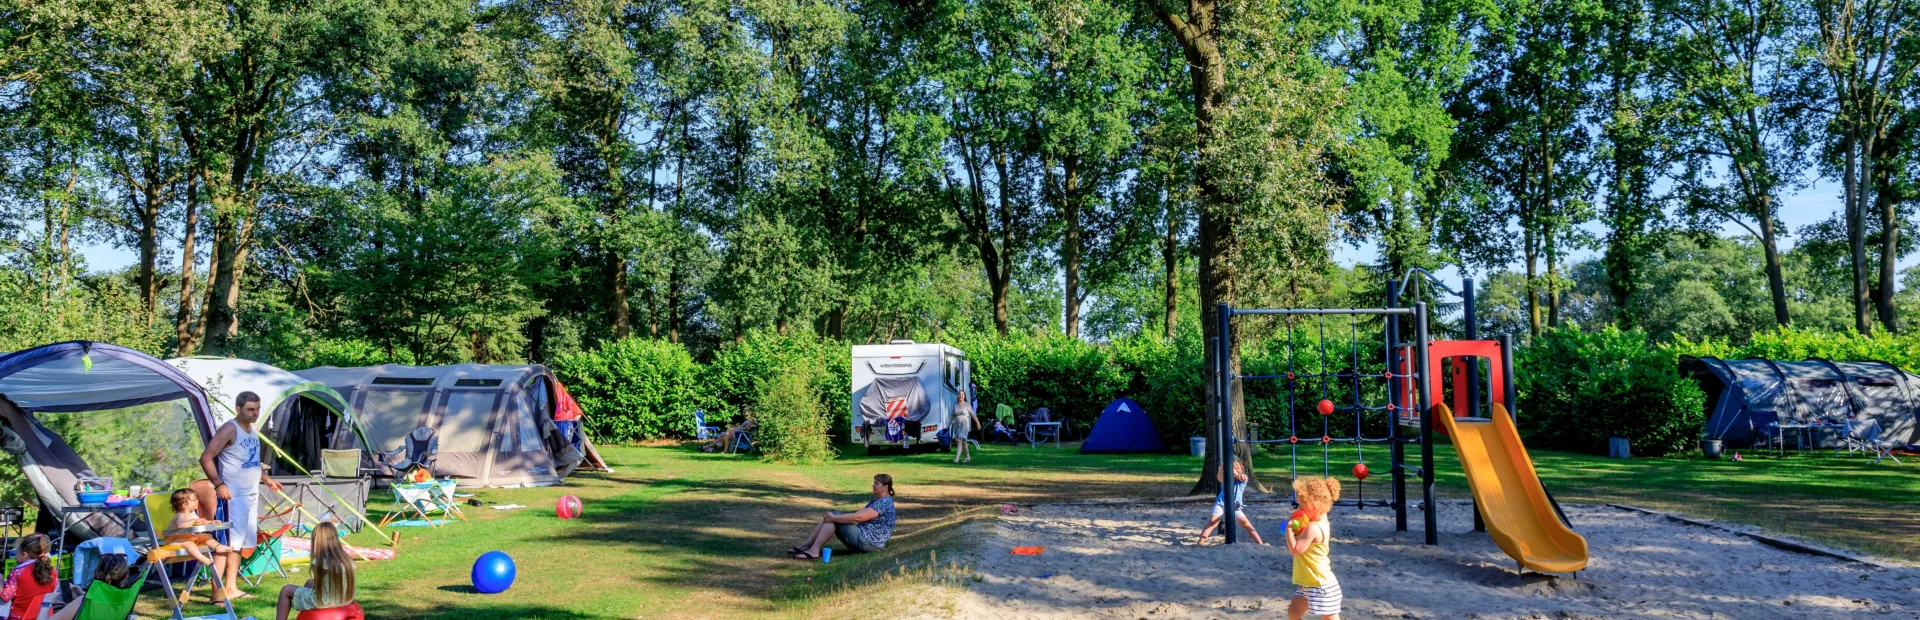 Ullingse Bergen Camping Noord Brabant Kamperen met kids